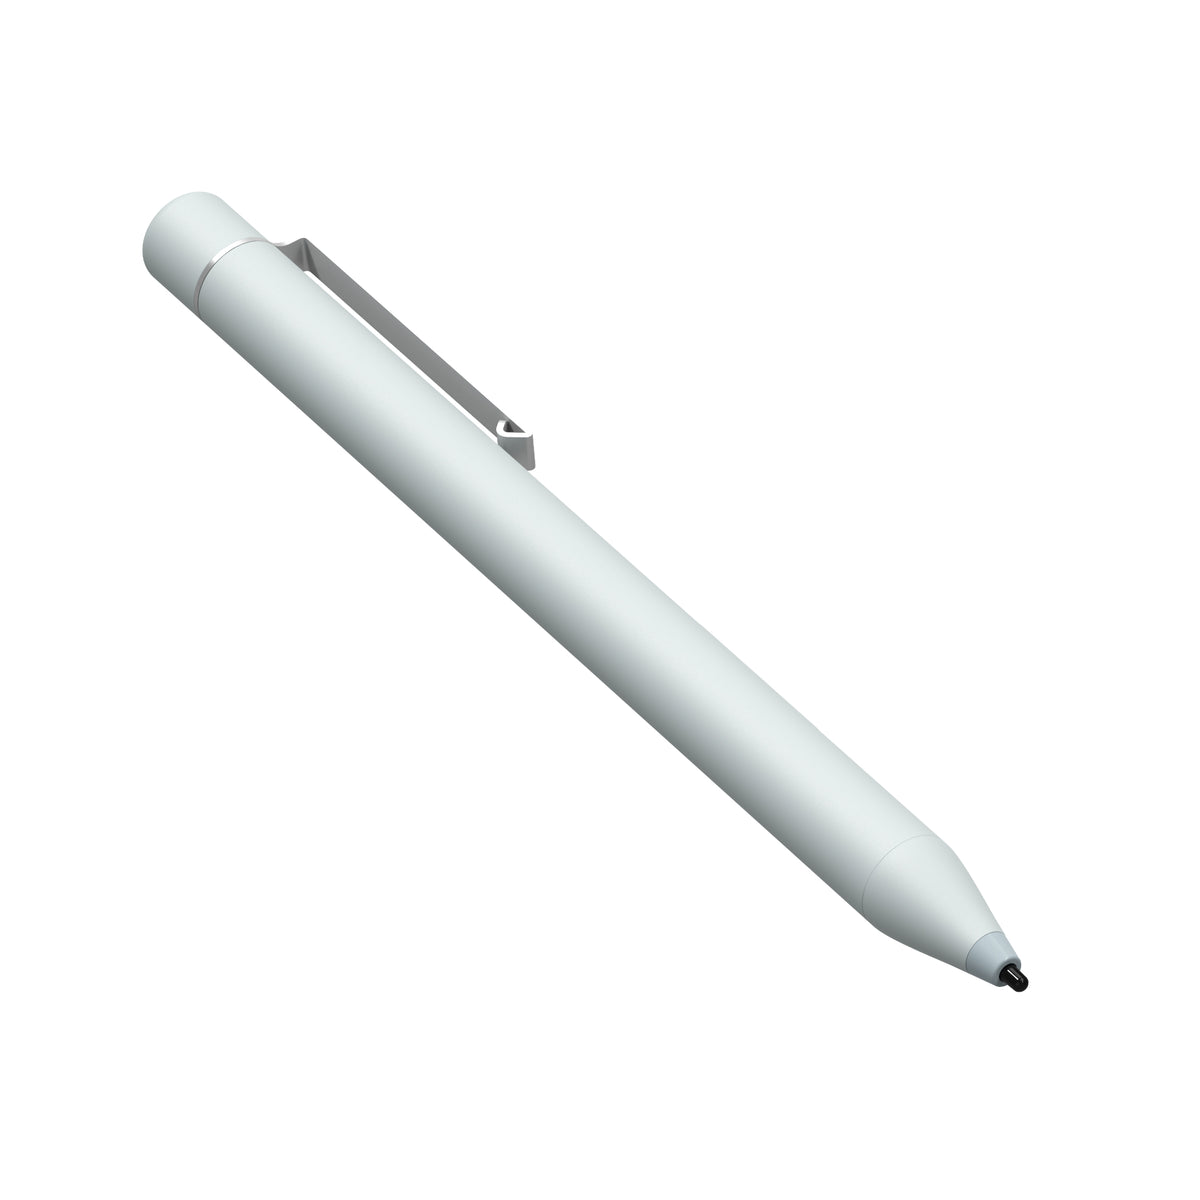 Stylus Pen for K10 Pro Tablet - Vastking